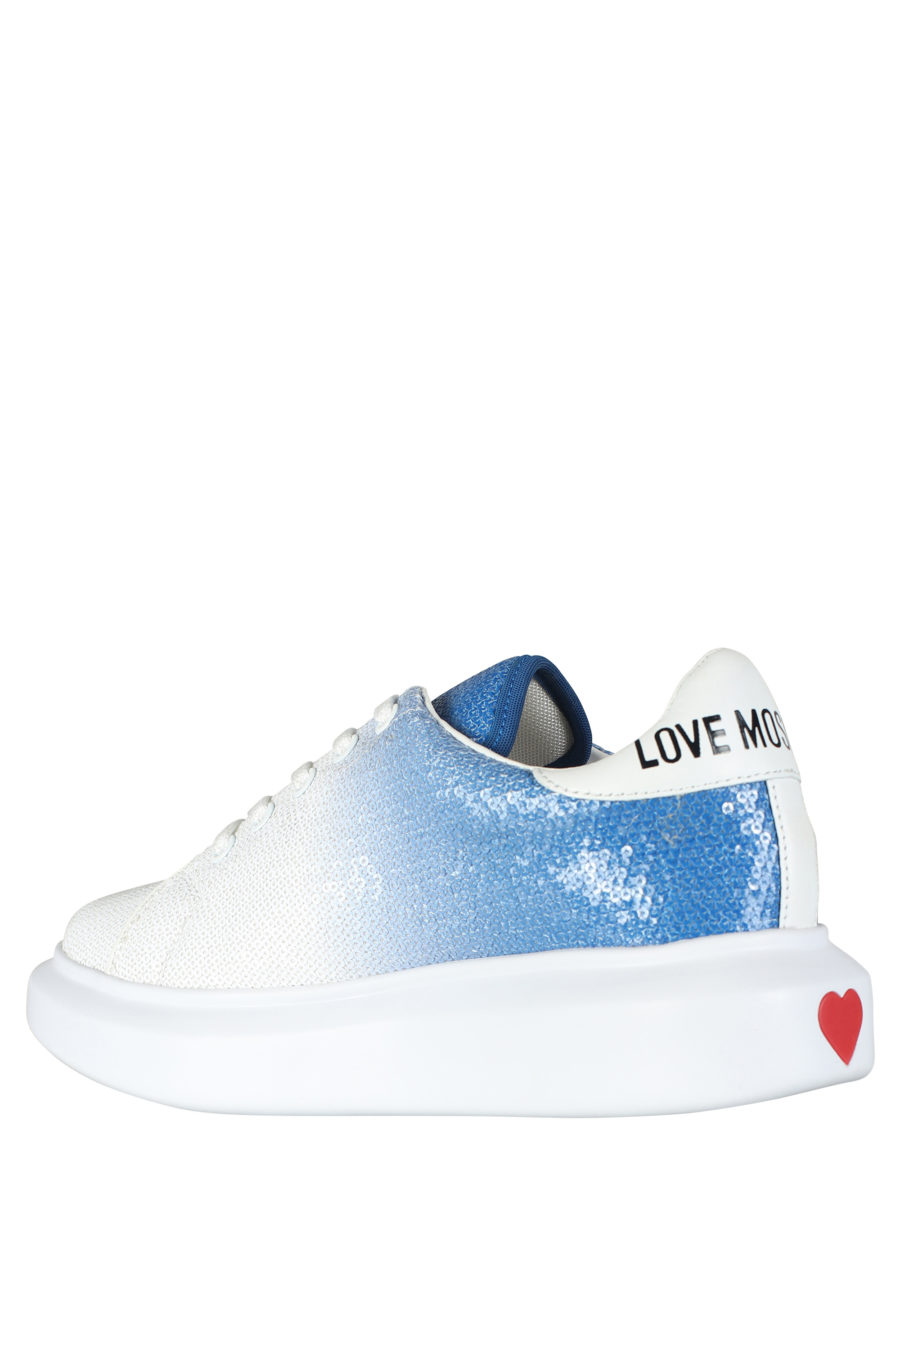 Zapatillas blancas con degrade azul y lentejuelas - IMG 5259